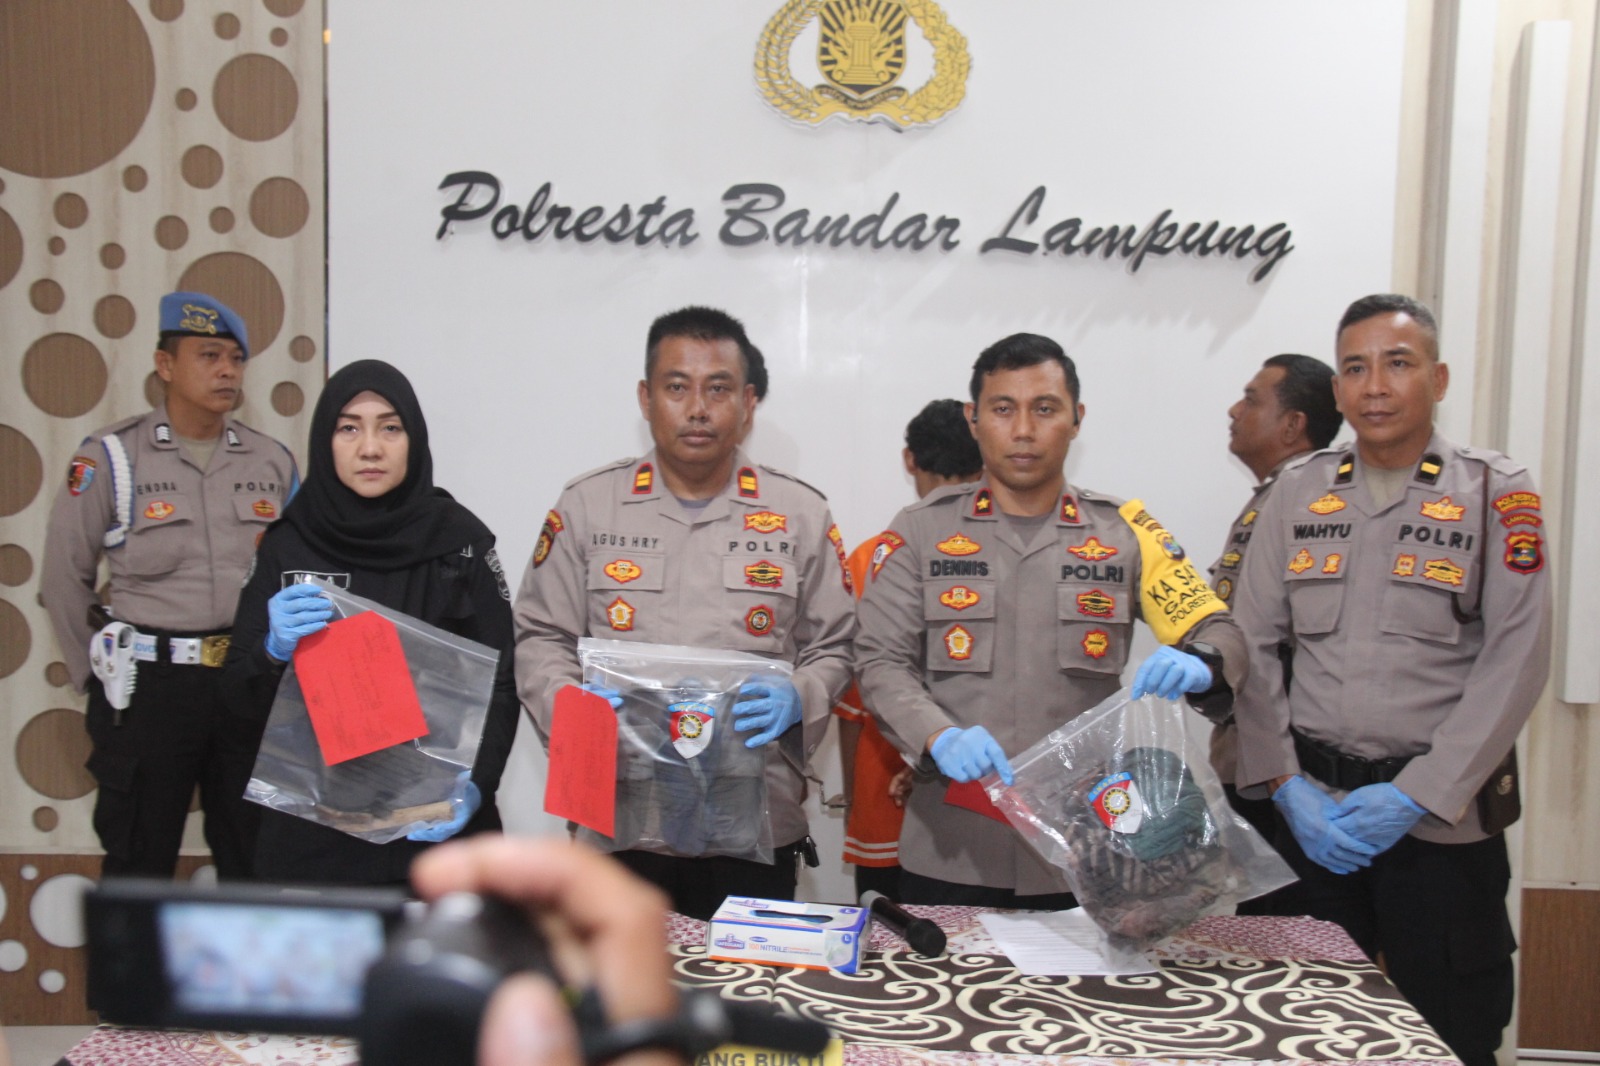 Polresta Bandar Lampung Berhasil Ungkap Kasus Pembunuhan di Kemiling